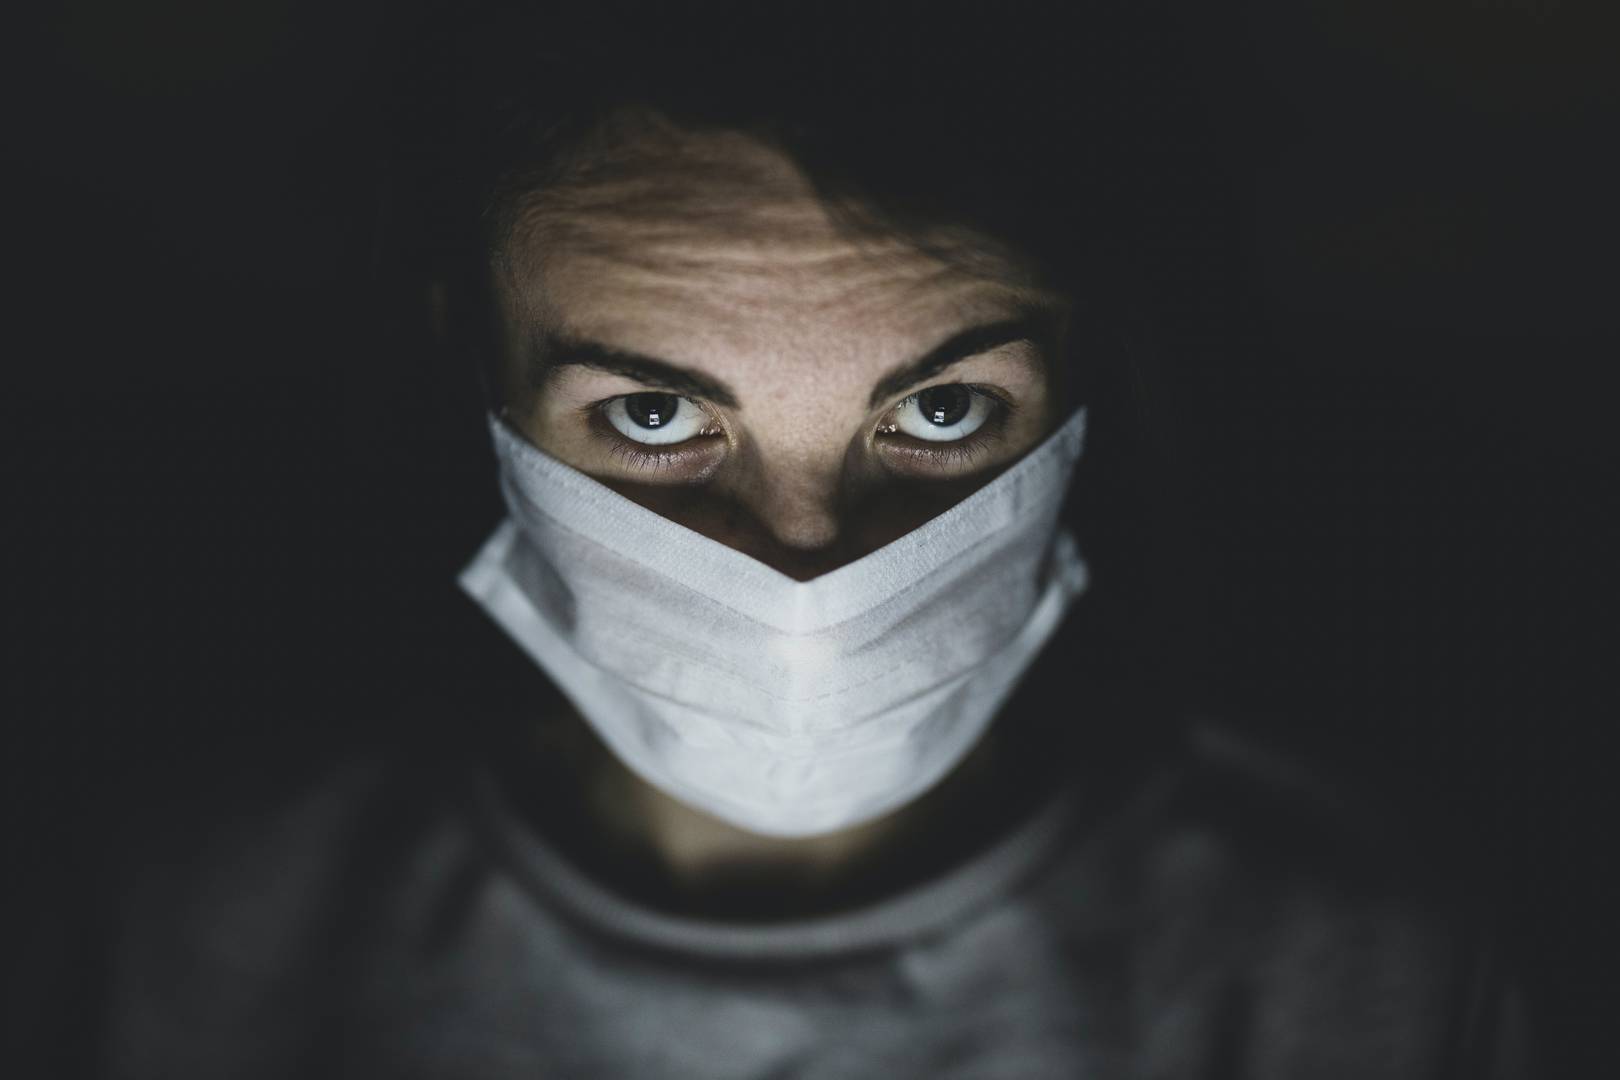 Человек в медицинской маске